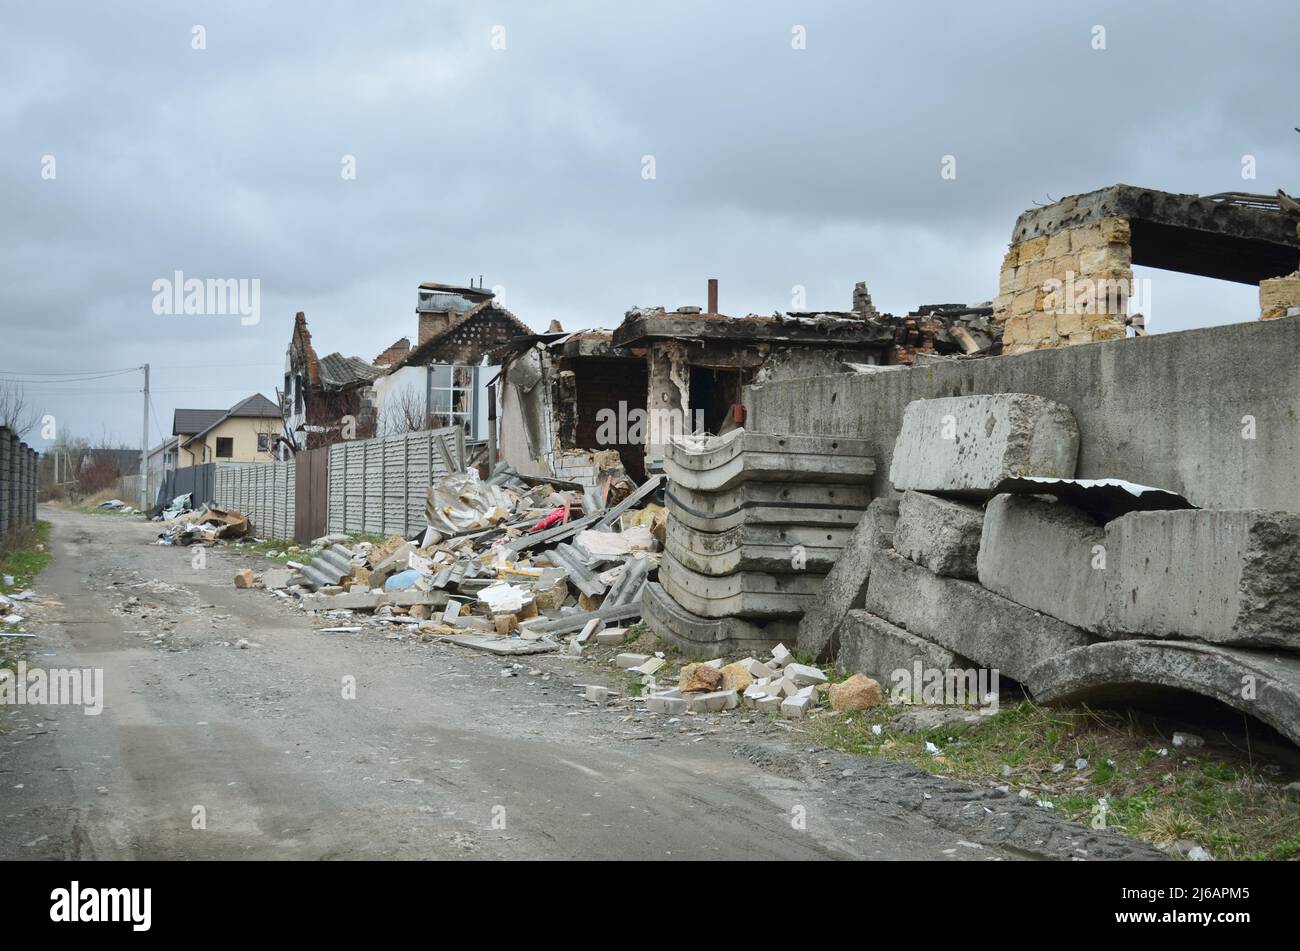 Village de Dmytrivka, région de Kyev, Ukraine - 13 avril 2022 : destruction de maisons privées pendant des hostilités actives en Ukraine. Guerre de la Russie contre l'Ukraine Banque D'Images